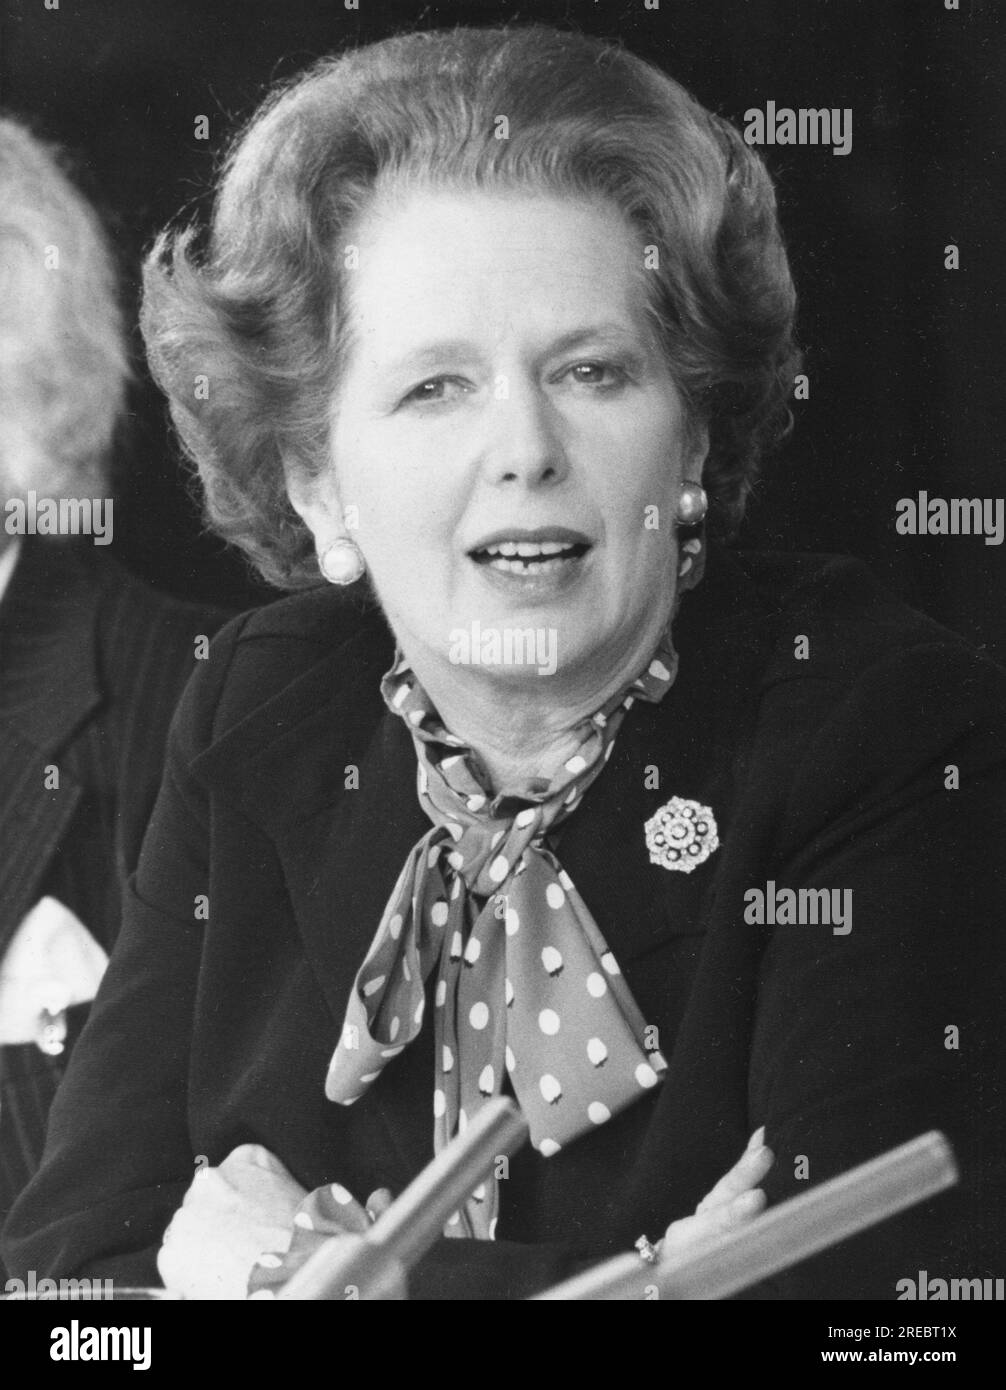 Thatcher, Margaret Hilda, 13.10.1925 - 8,4.2013, politicienne britannique (Cons.), INFORMATION-AUTORISATION-DROITS-SUPPLÉMENTAIRES-NON-DISPONIBLE Banque D'Images